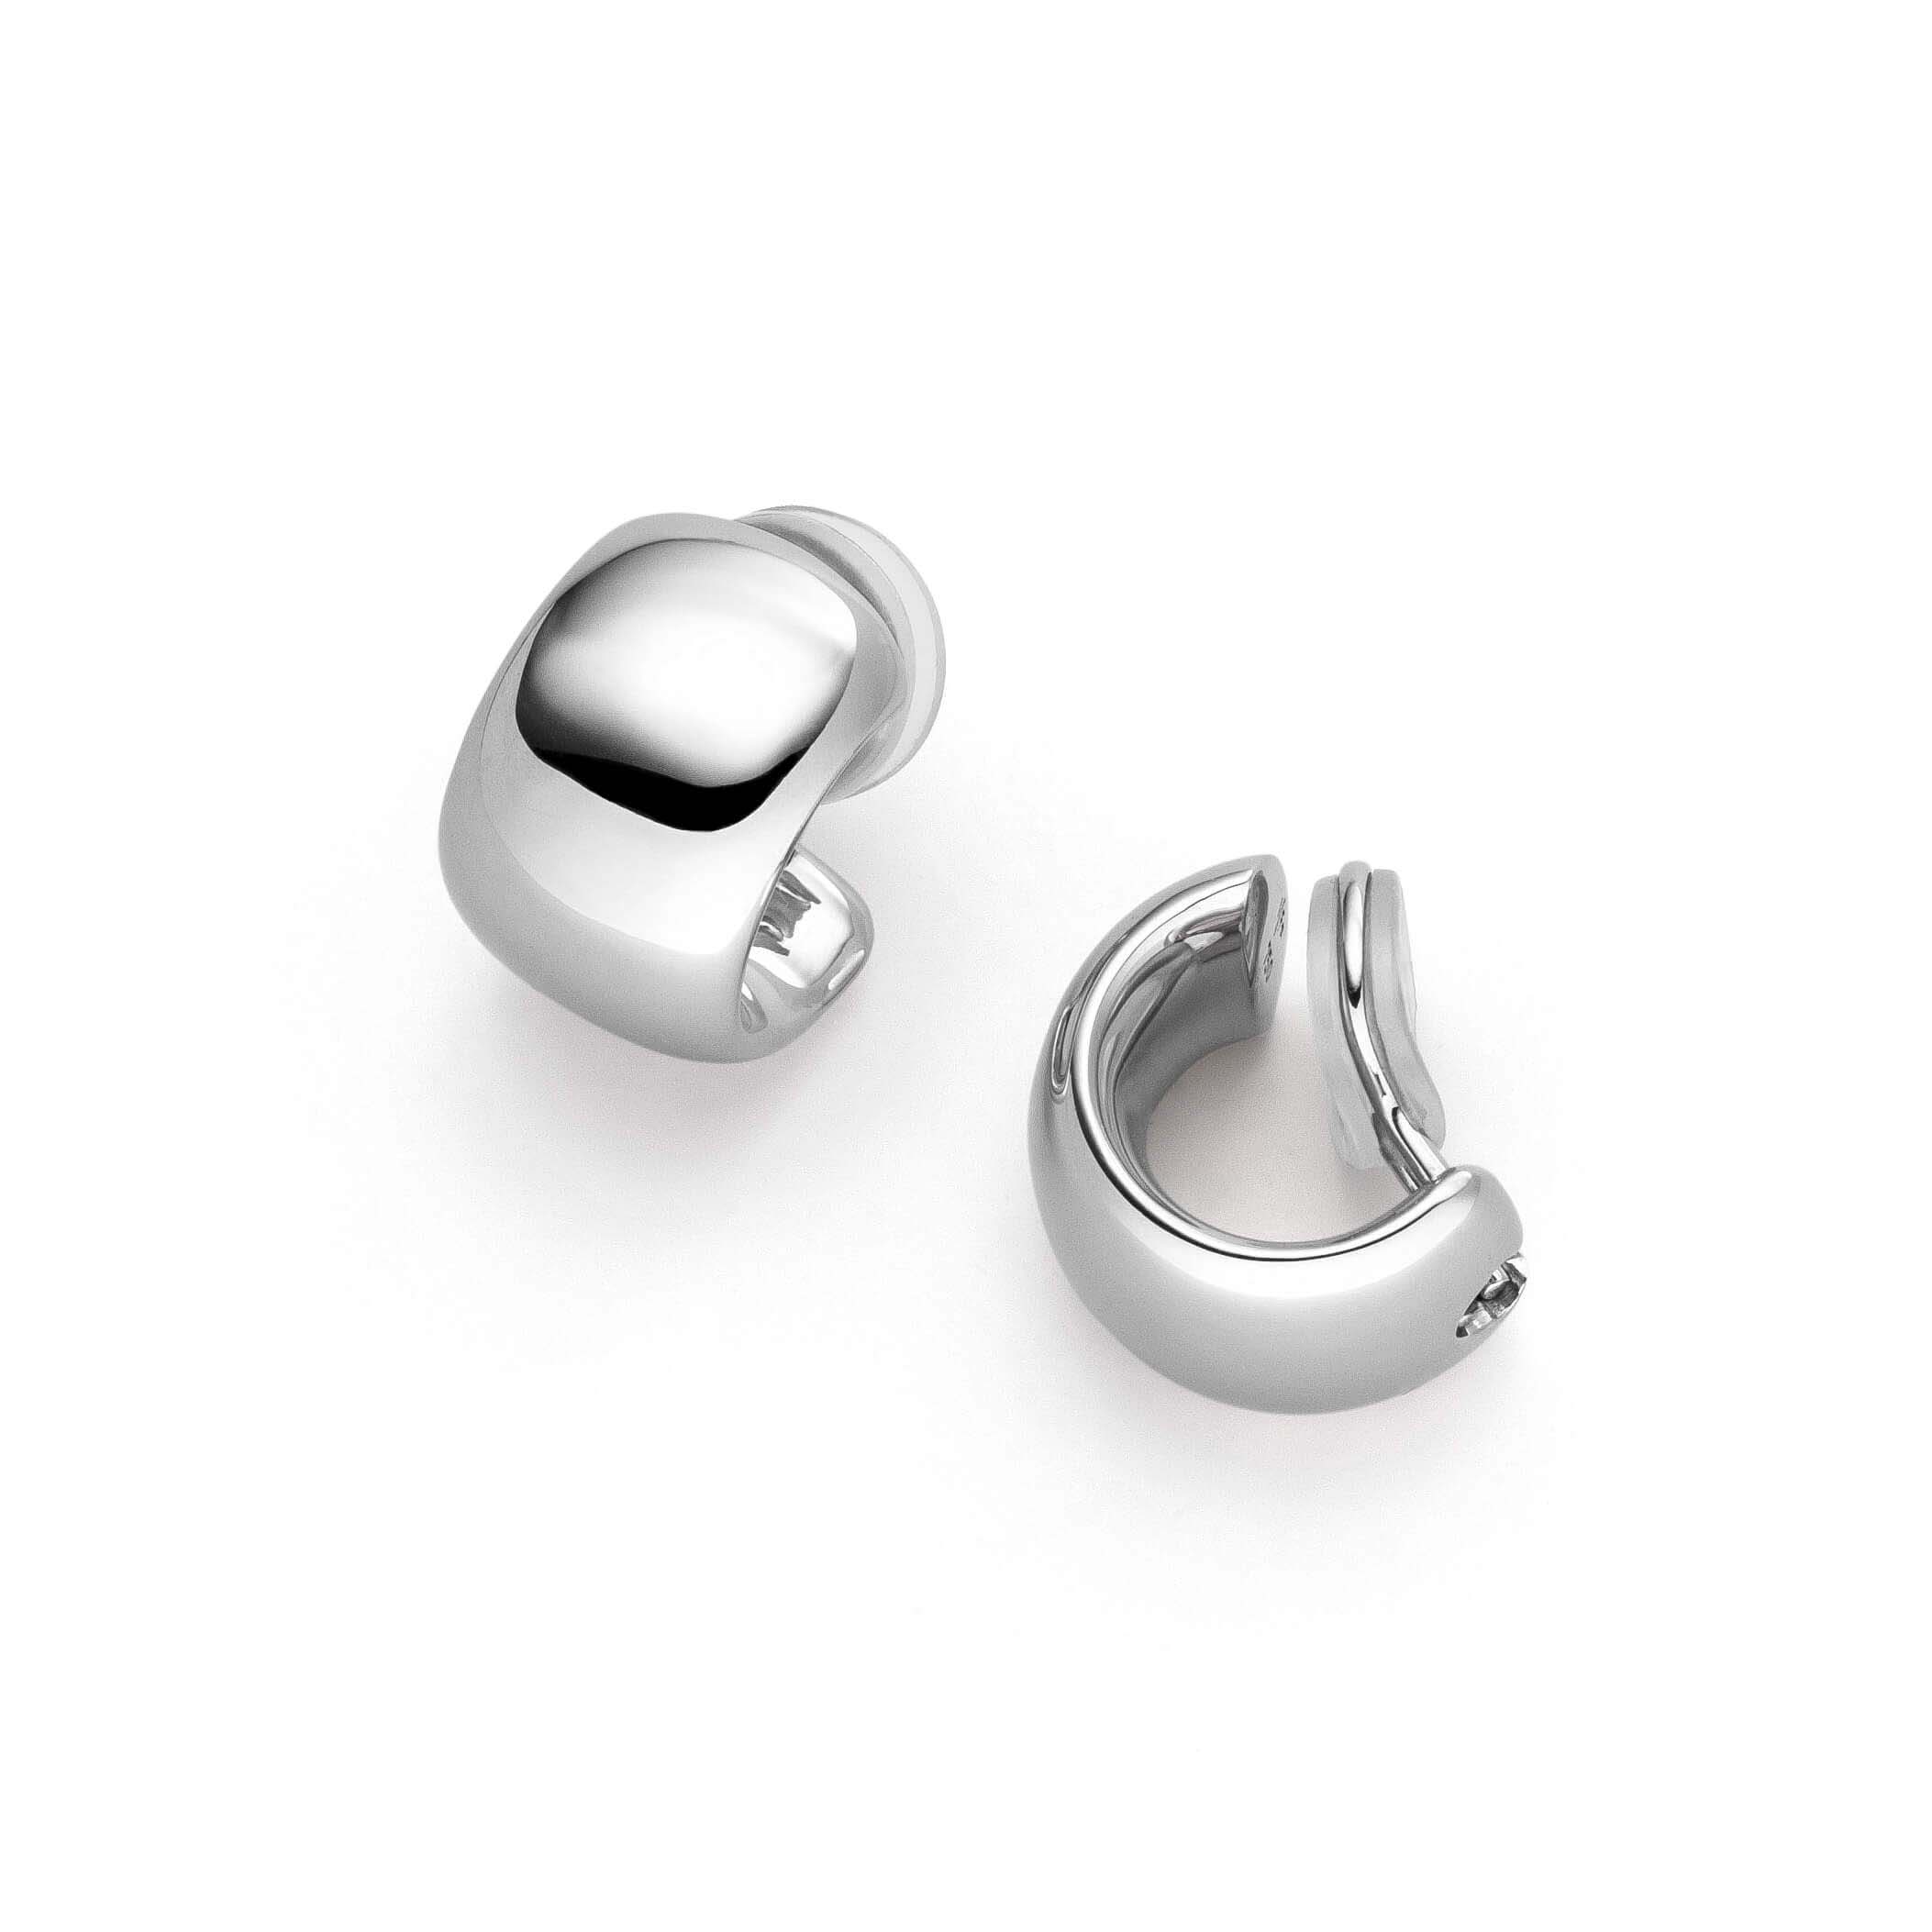 Die individuellen Ohrringe aus 925er-Sterlingsilber entsprechen genau der Beschreibung und passen perfekt